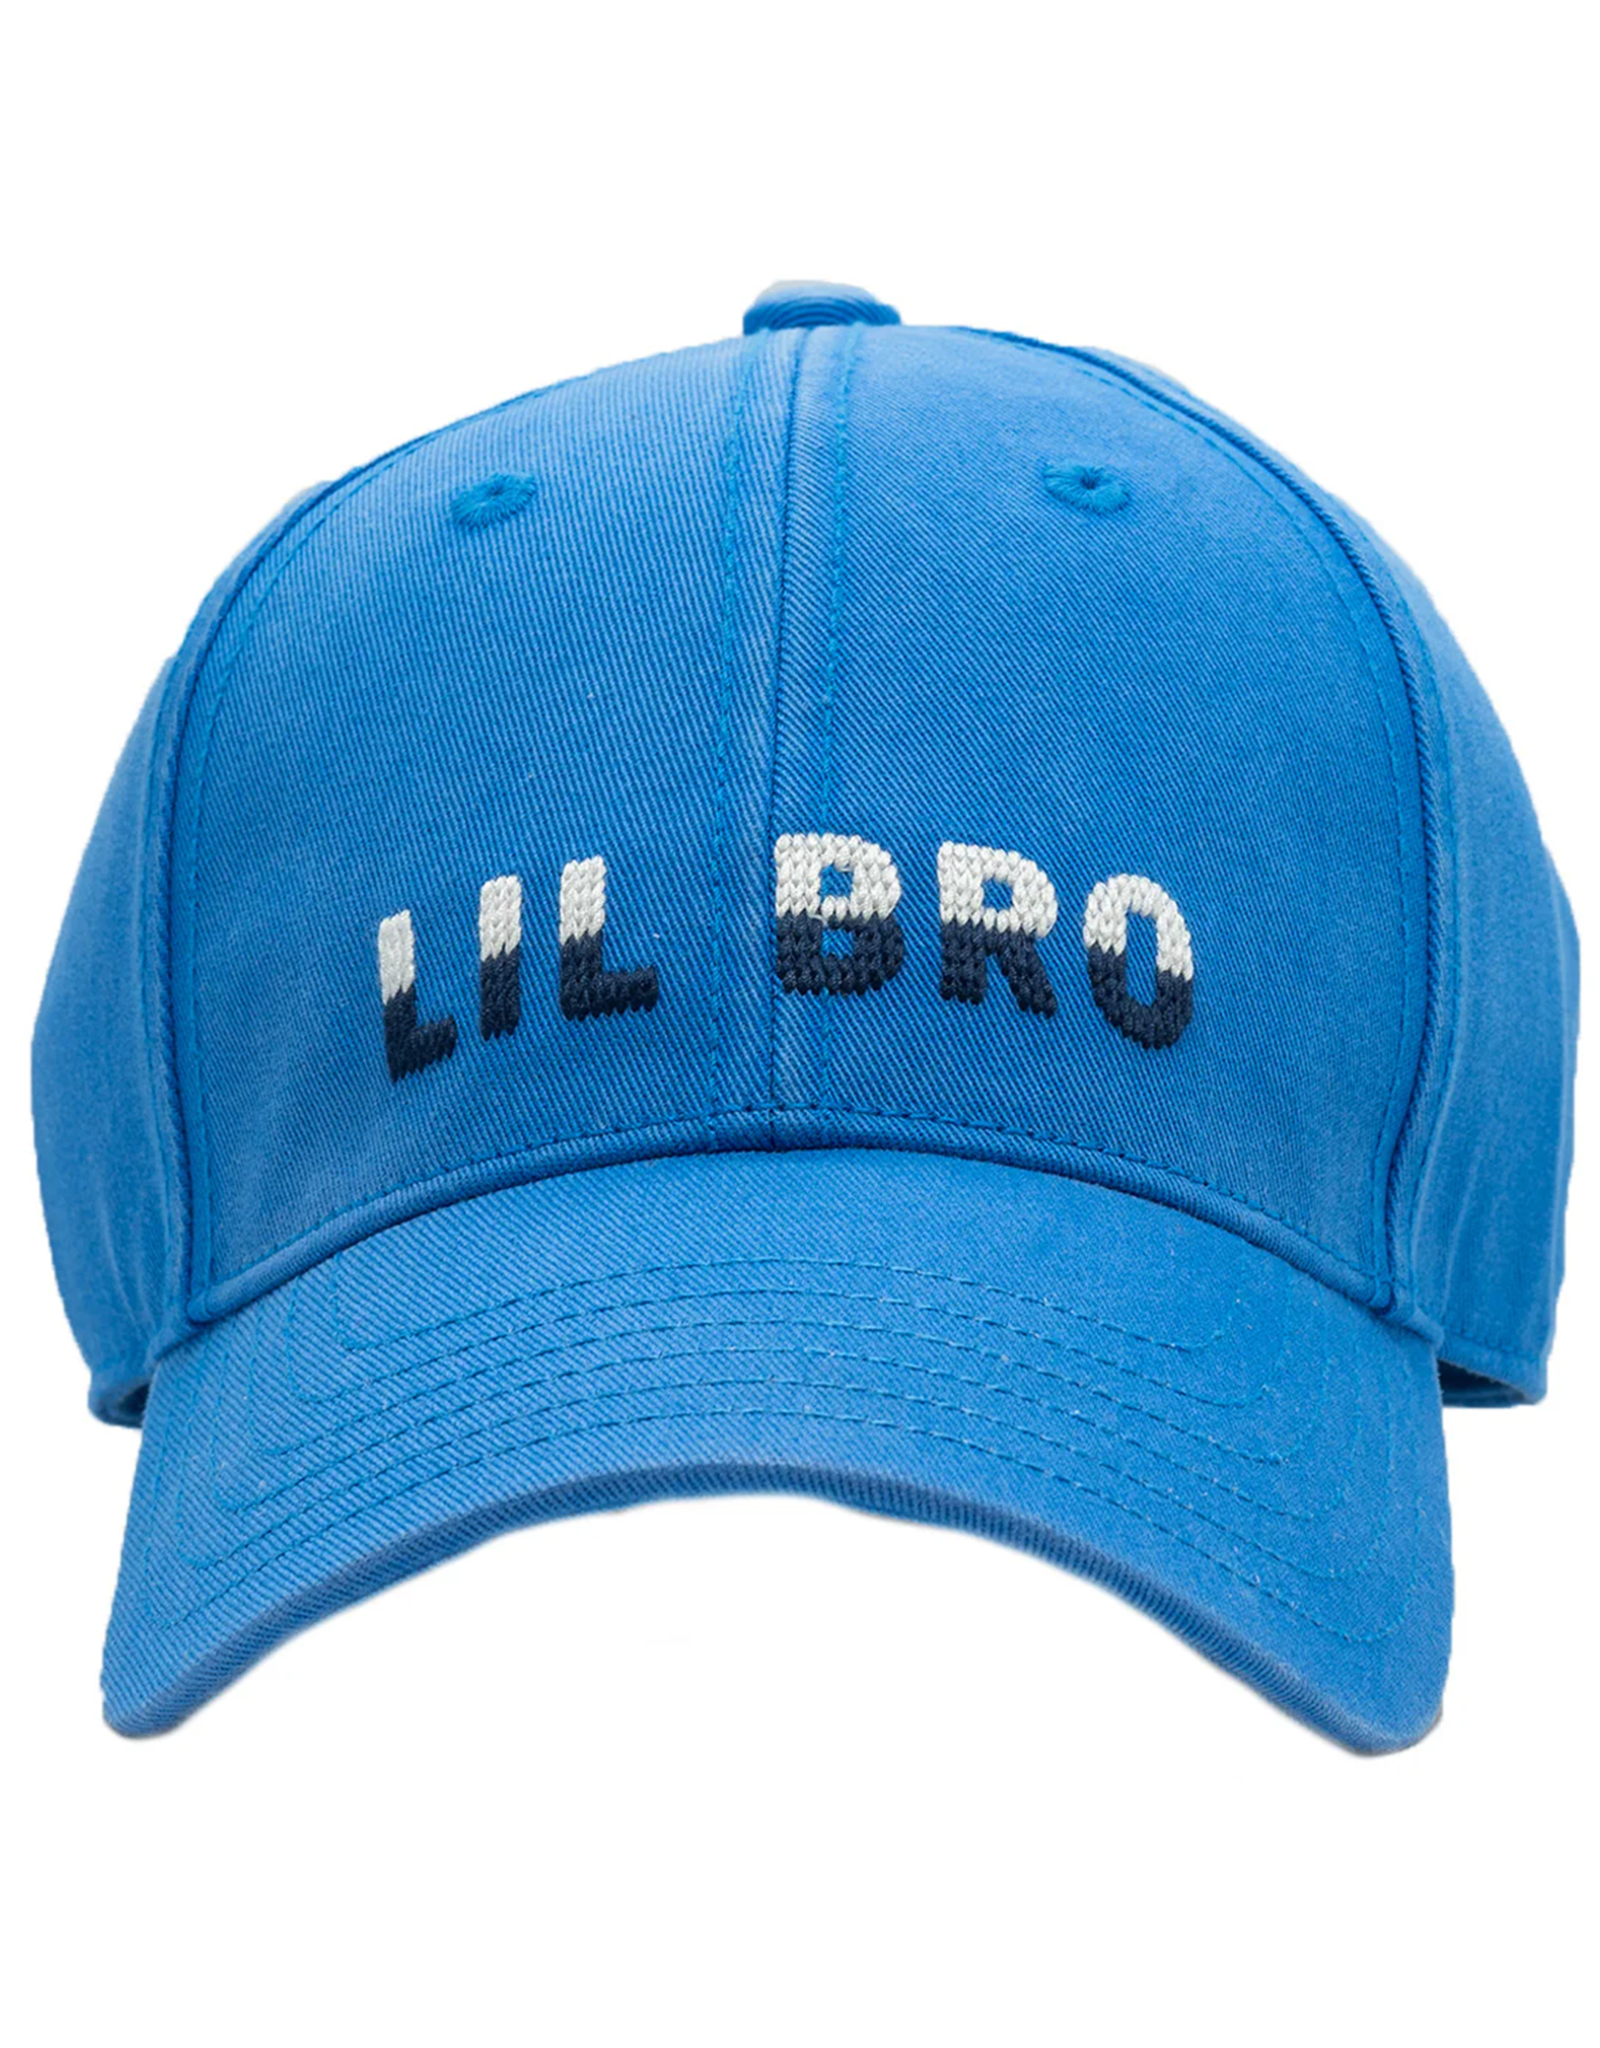 Harding Lane HL Embroidered Hat Lt. Blue Lil Bro